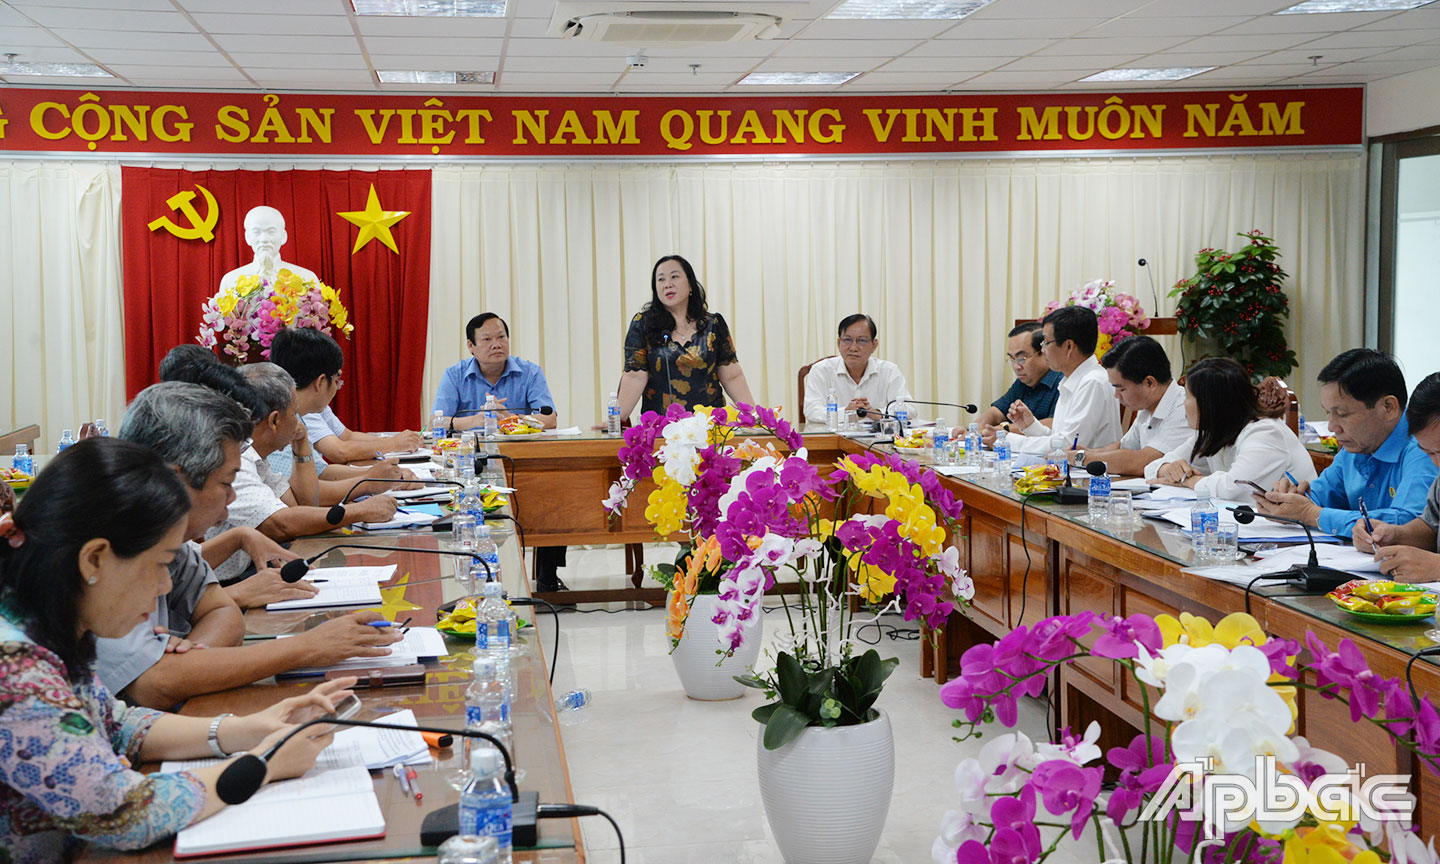 Đồng chí Nguyễn Thị Tuyết Vân phát biểu tại buổi làm việc với Sở GTVT.